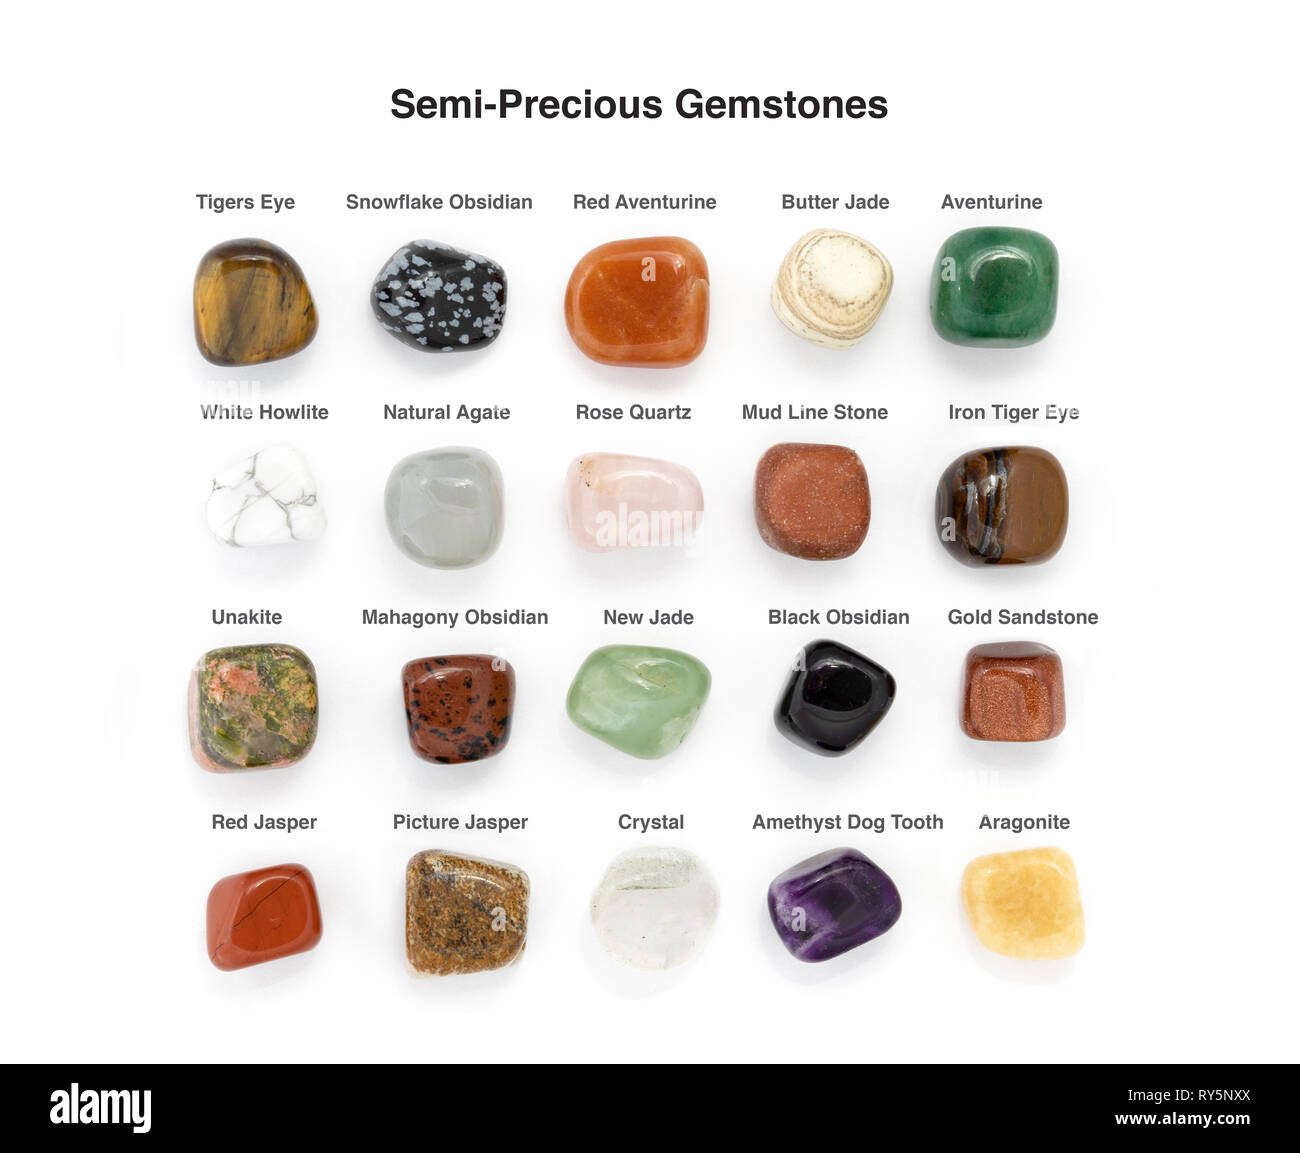 Semi-Precious surtidos de piedras preciosas Foto de stock